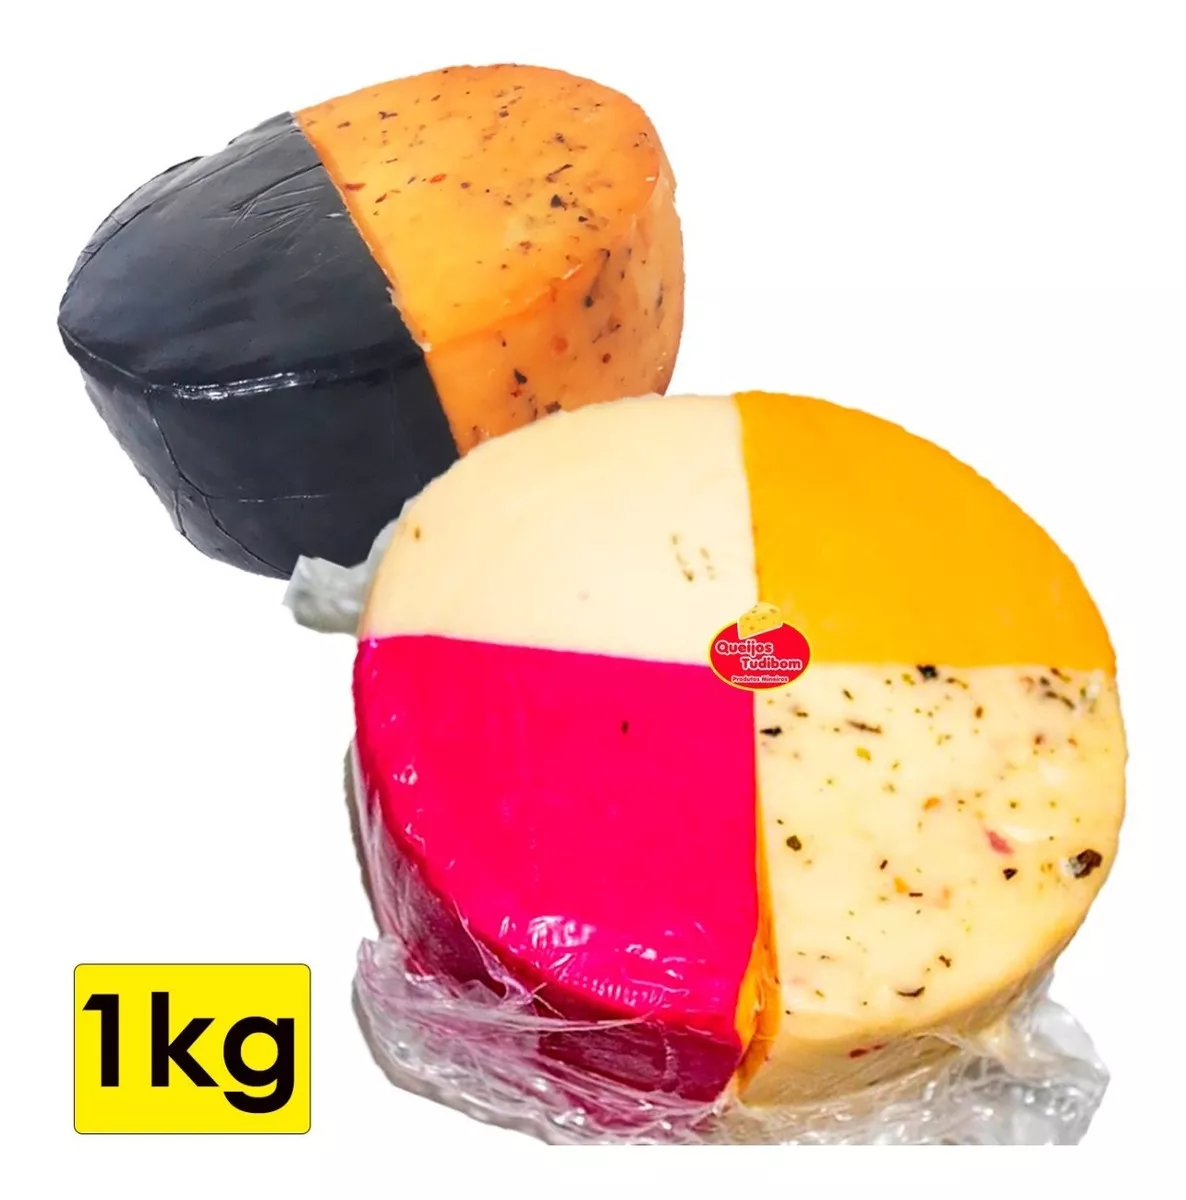 Terceira imagem para pesquisa de queijo canastra